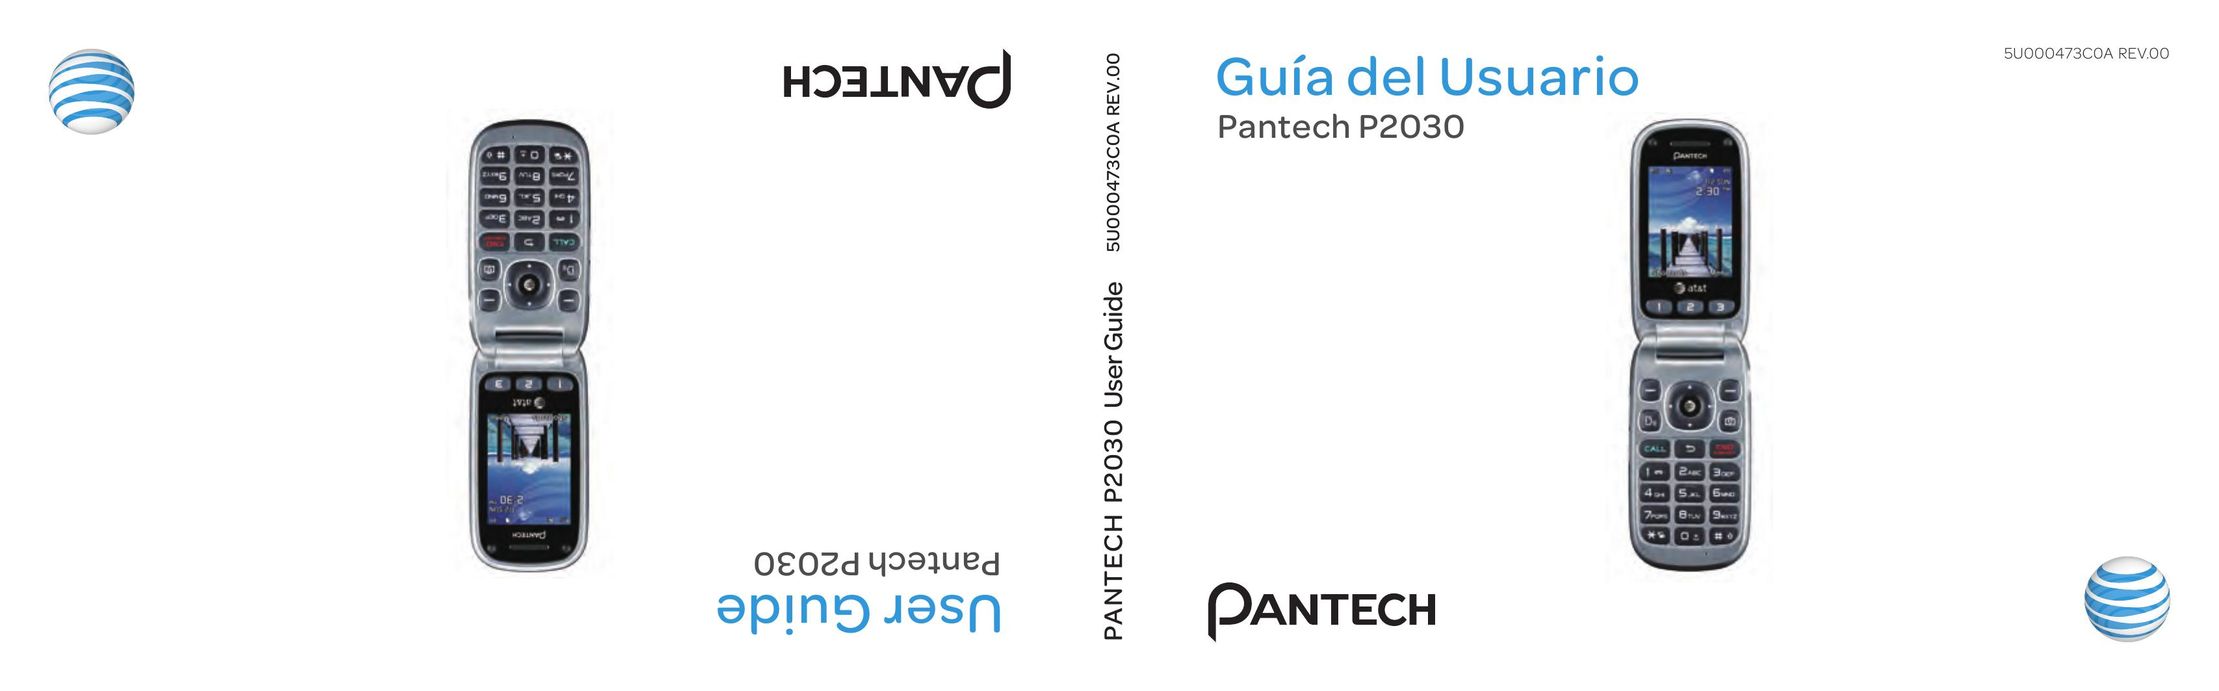 Pantech P2030 Cell Phone User Manual